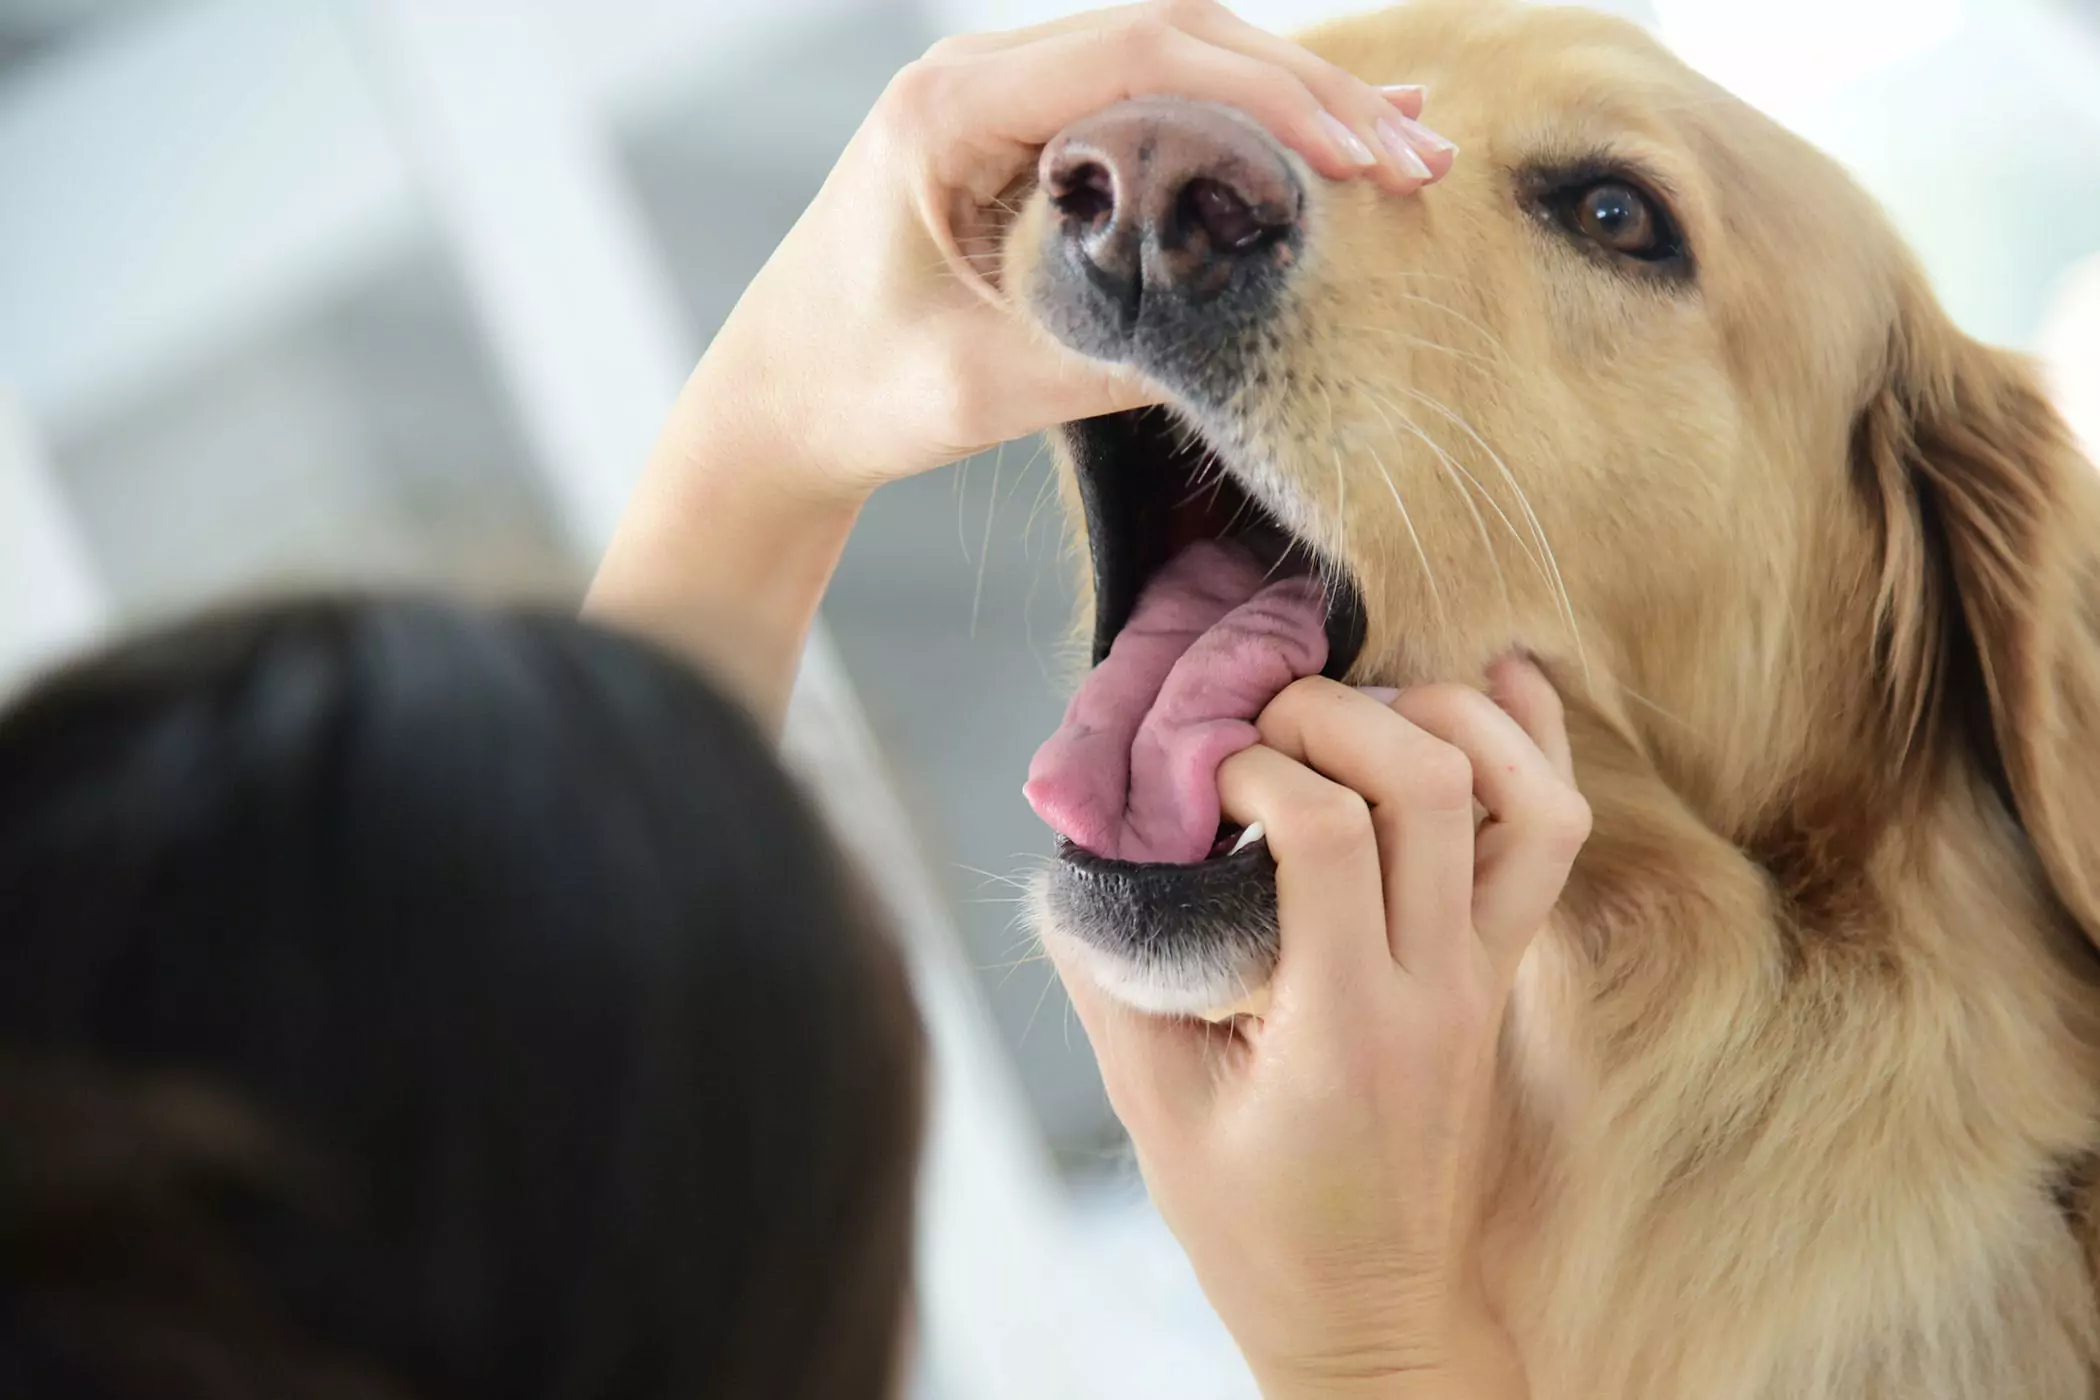 La bouche d'un chien est-elle plus propre que celle d'un humain ? La bouche d'un chien est plus propre que celle d'un humain ? Il s'agit d'un concept volé, les deux ne sont pas comparables.